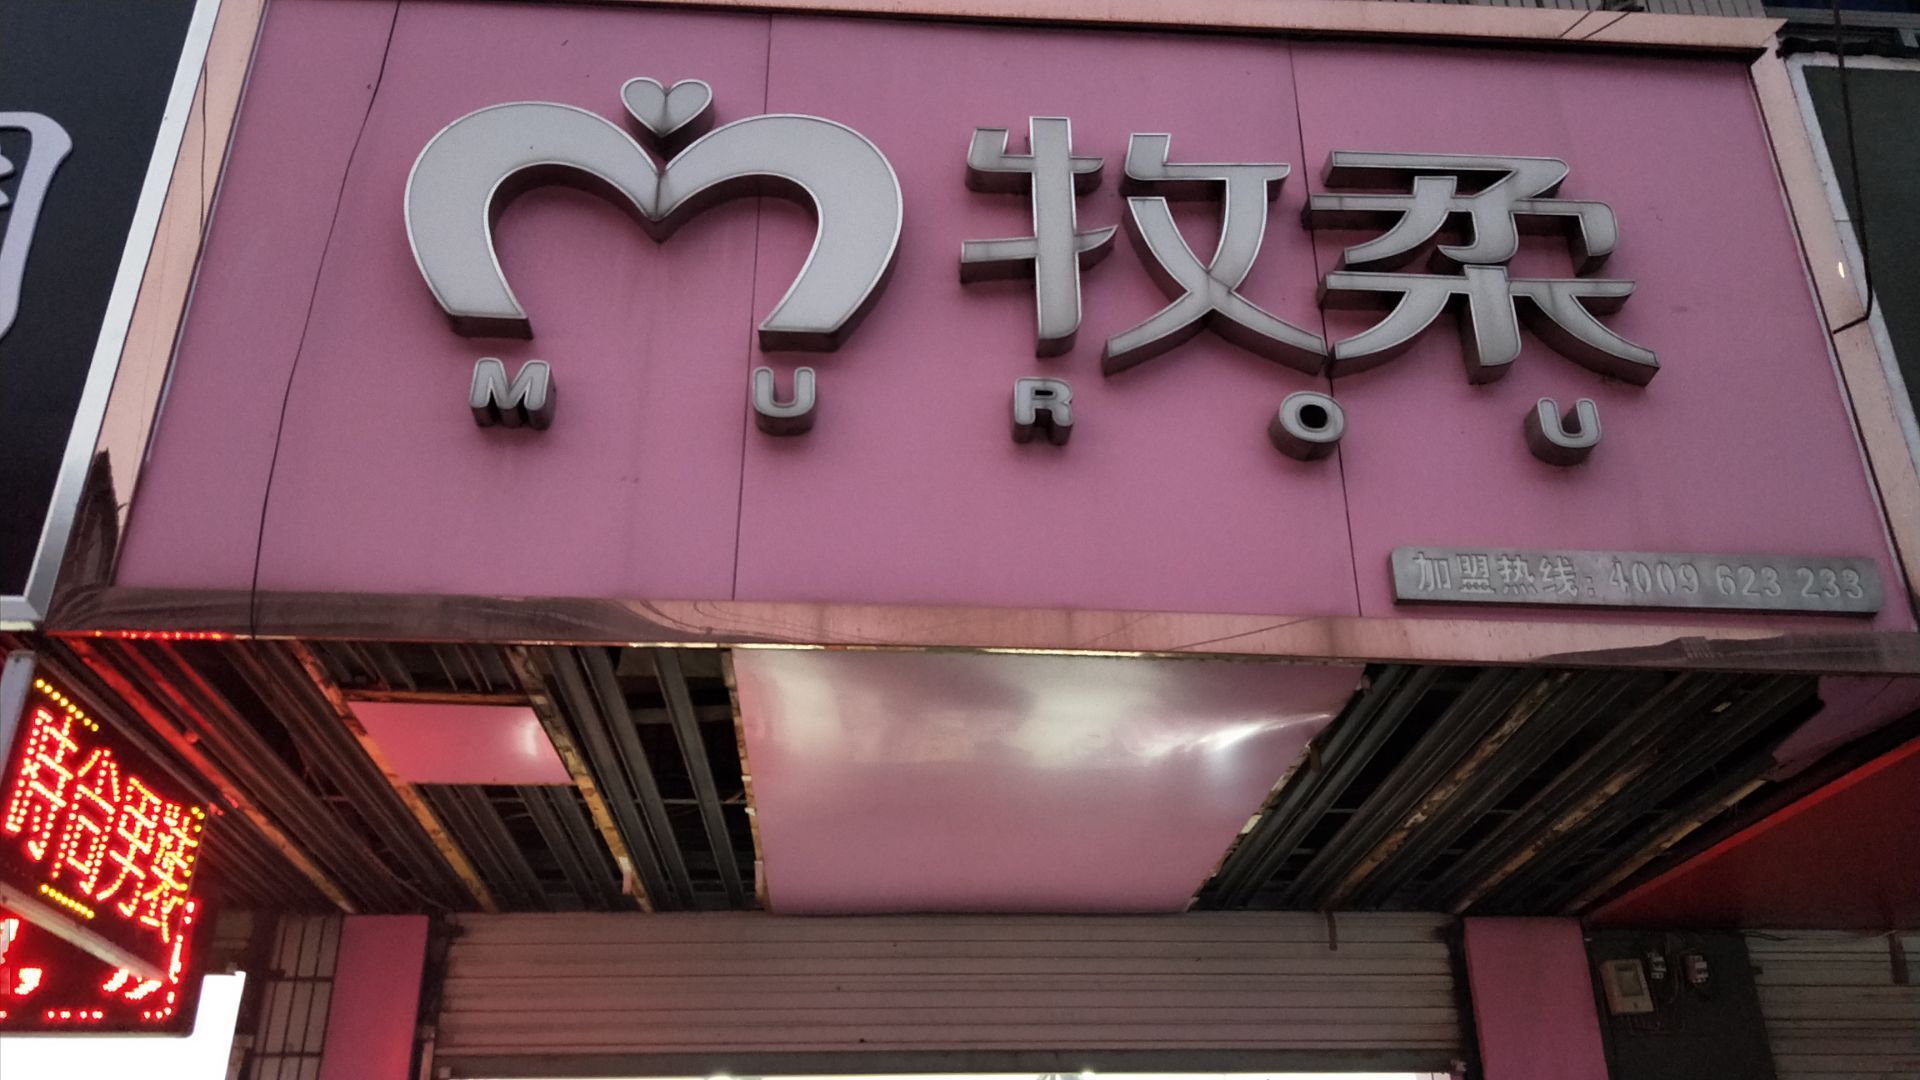 地址:芜湖市三山区鹏发花园小康路 牧柔是一家常见的品服装店